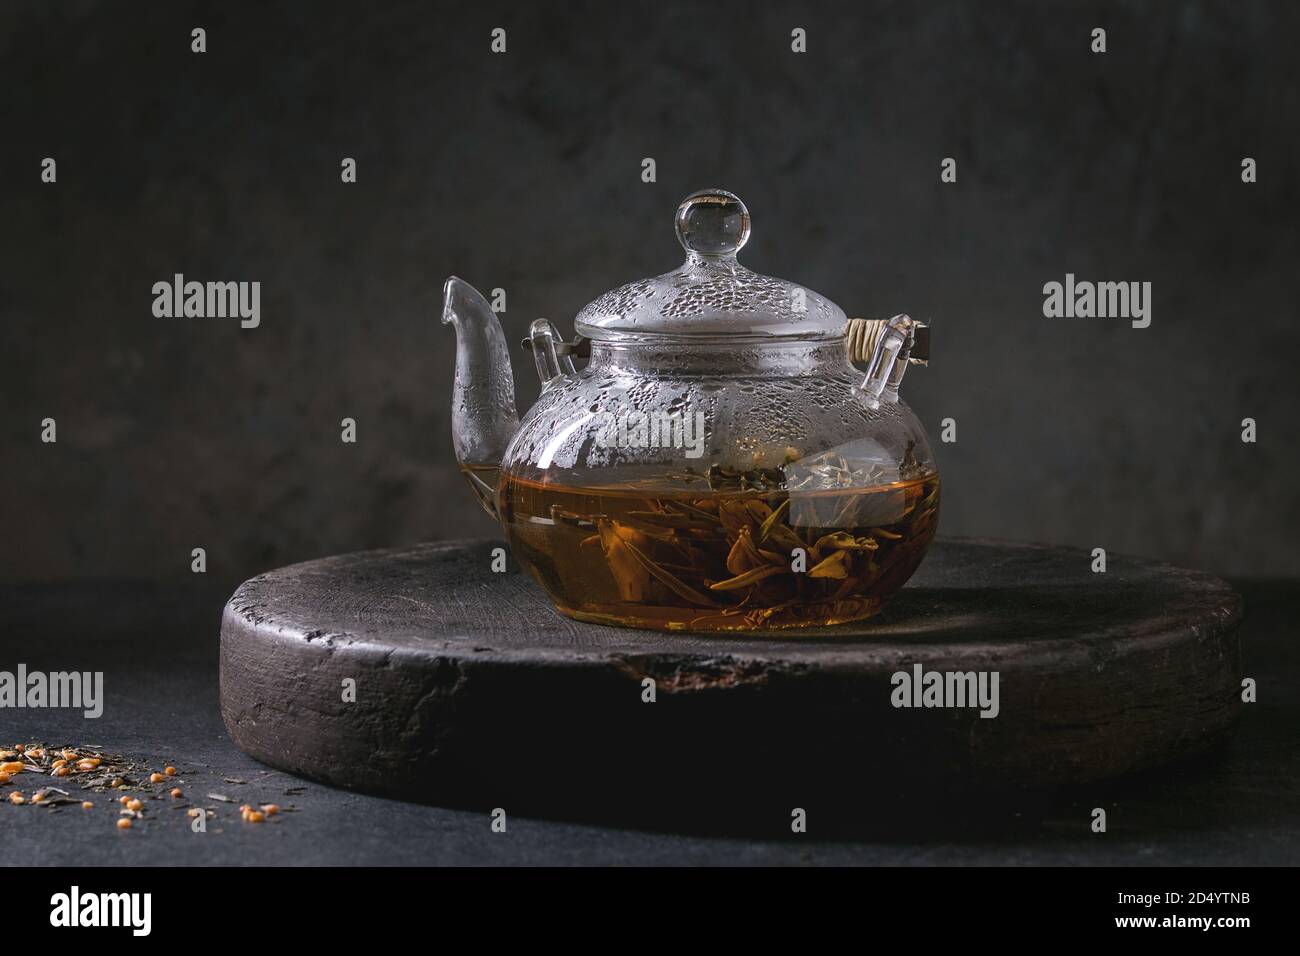 Hot grüner Tee in transparenten Glas Teekanne stehen auf Lehm Fach über  schwarzem Marmor tisch Stockfotografie - Alamy